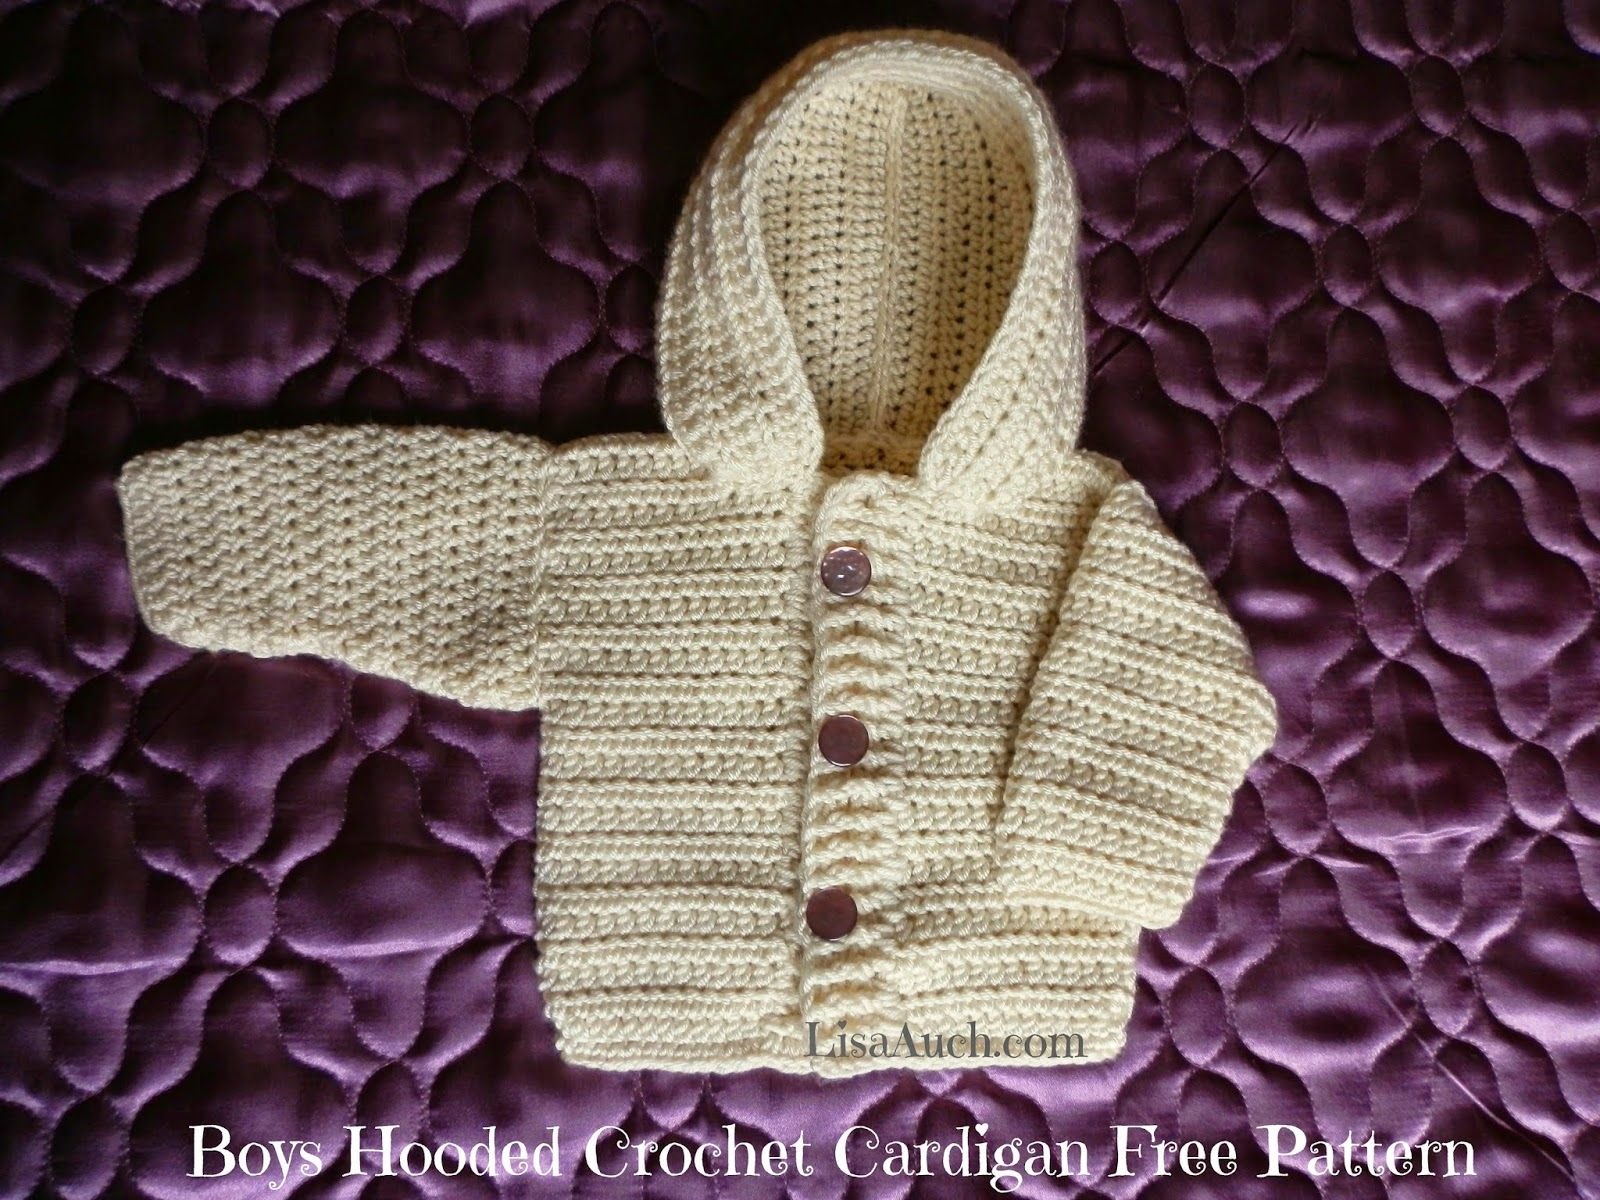 Crochet Baby Boy Sweater Pattern Free Crochet Ba Boy Cardigan Pattern With Hood Easy Hooded Crochet